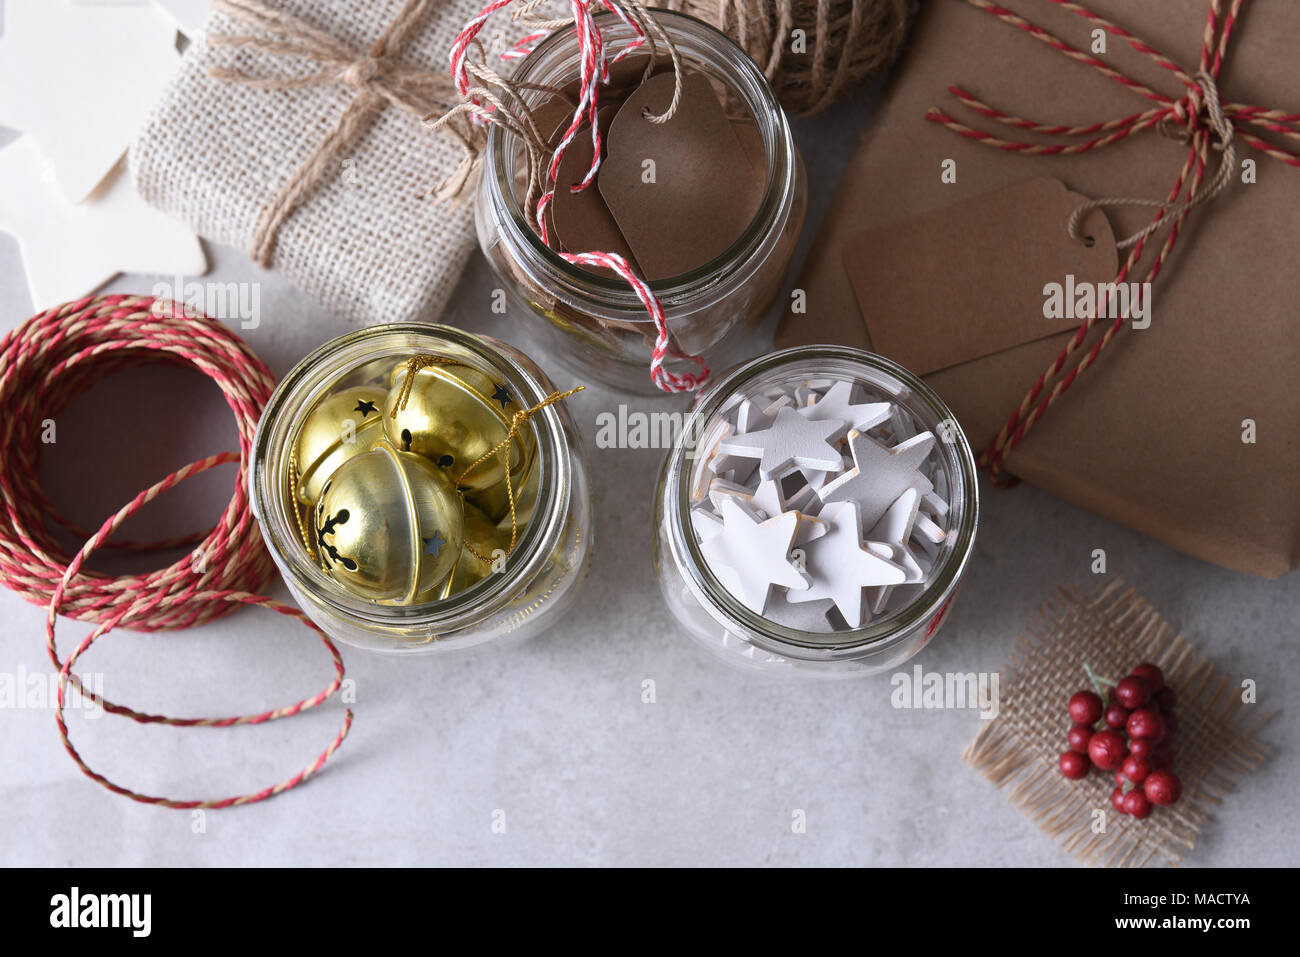 Weihnachtsgeschenk Verpackung liefert. Hohe Aufnahme von drei Maurergläser mit Geschenkanhänger, Holz Sterne, und Schlittenglöckchen gegen eine weiße Wand. Stockfoto